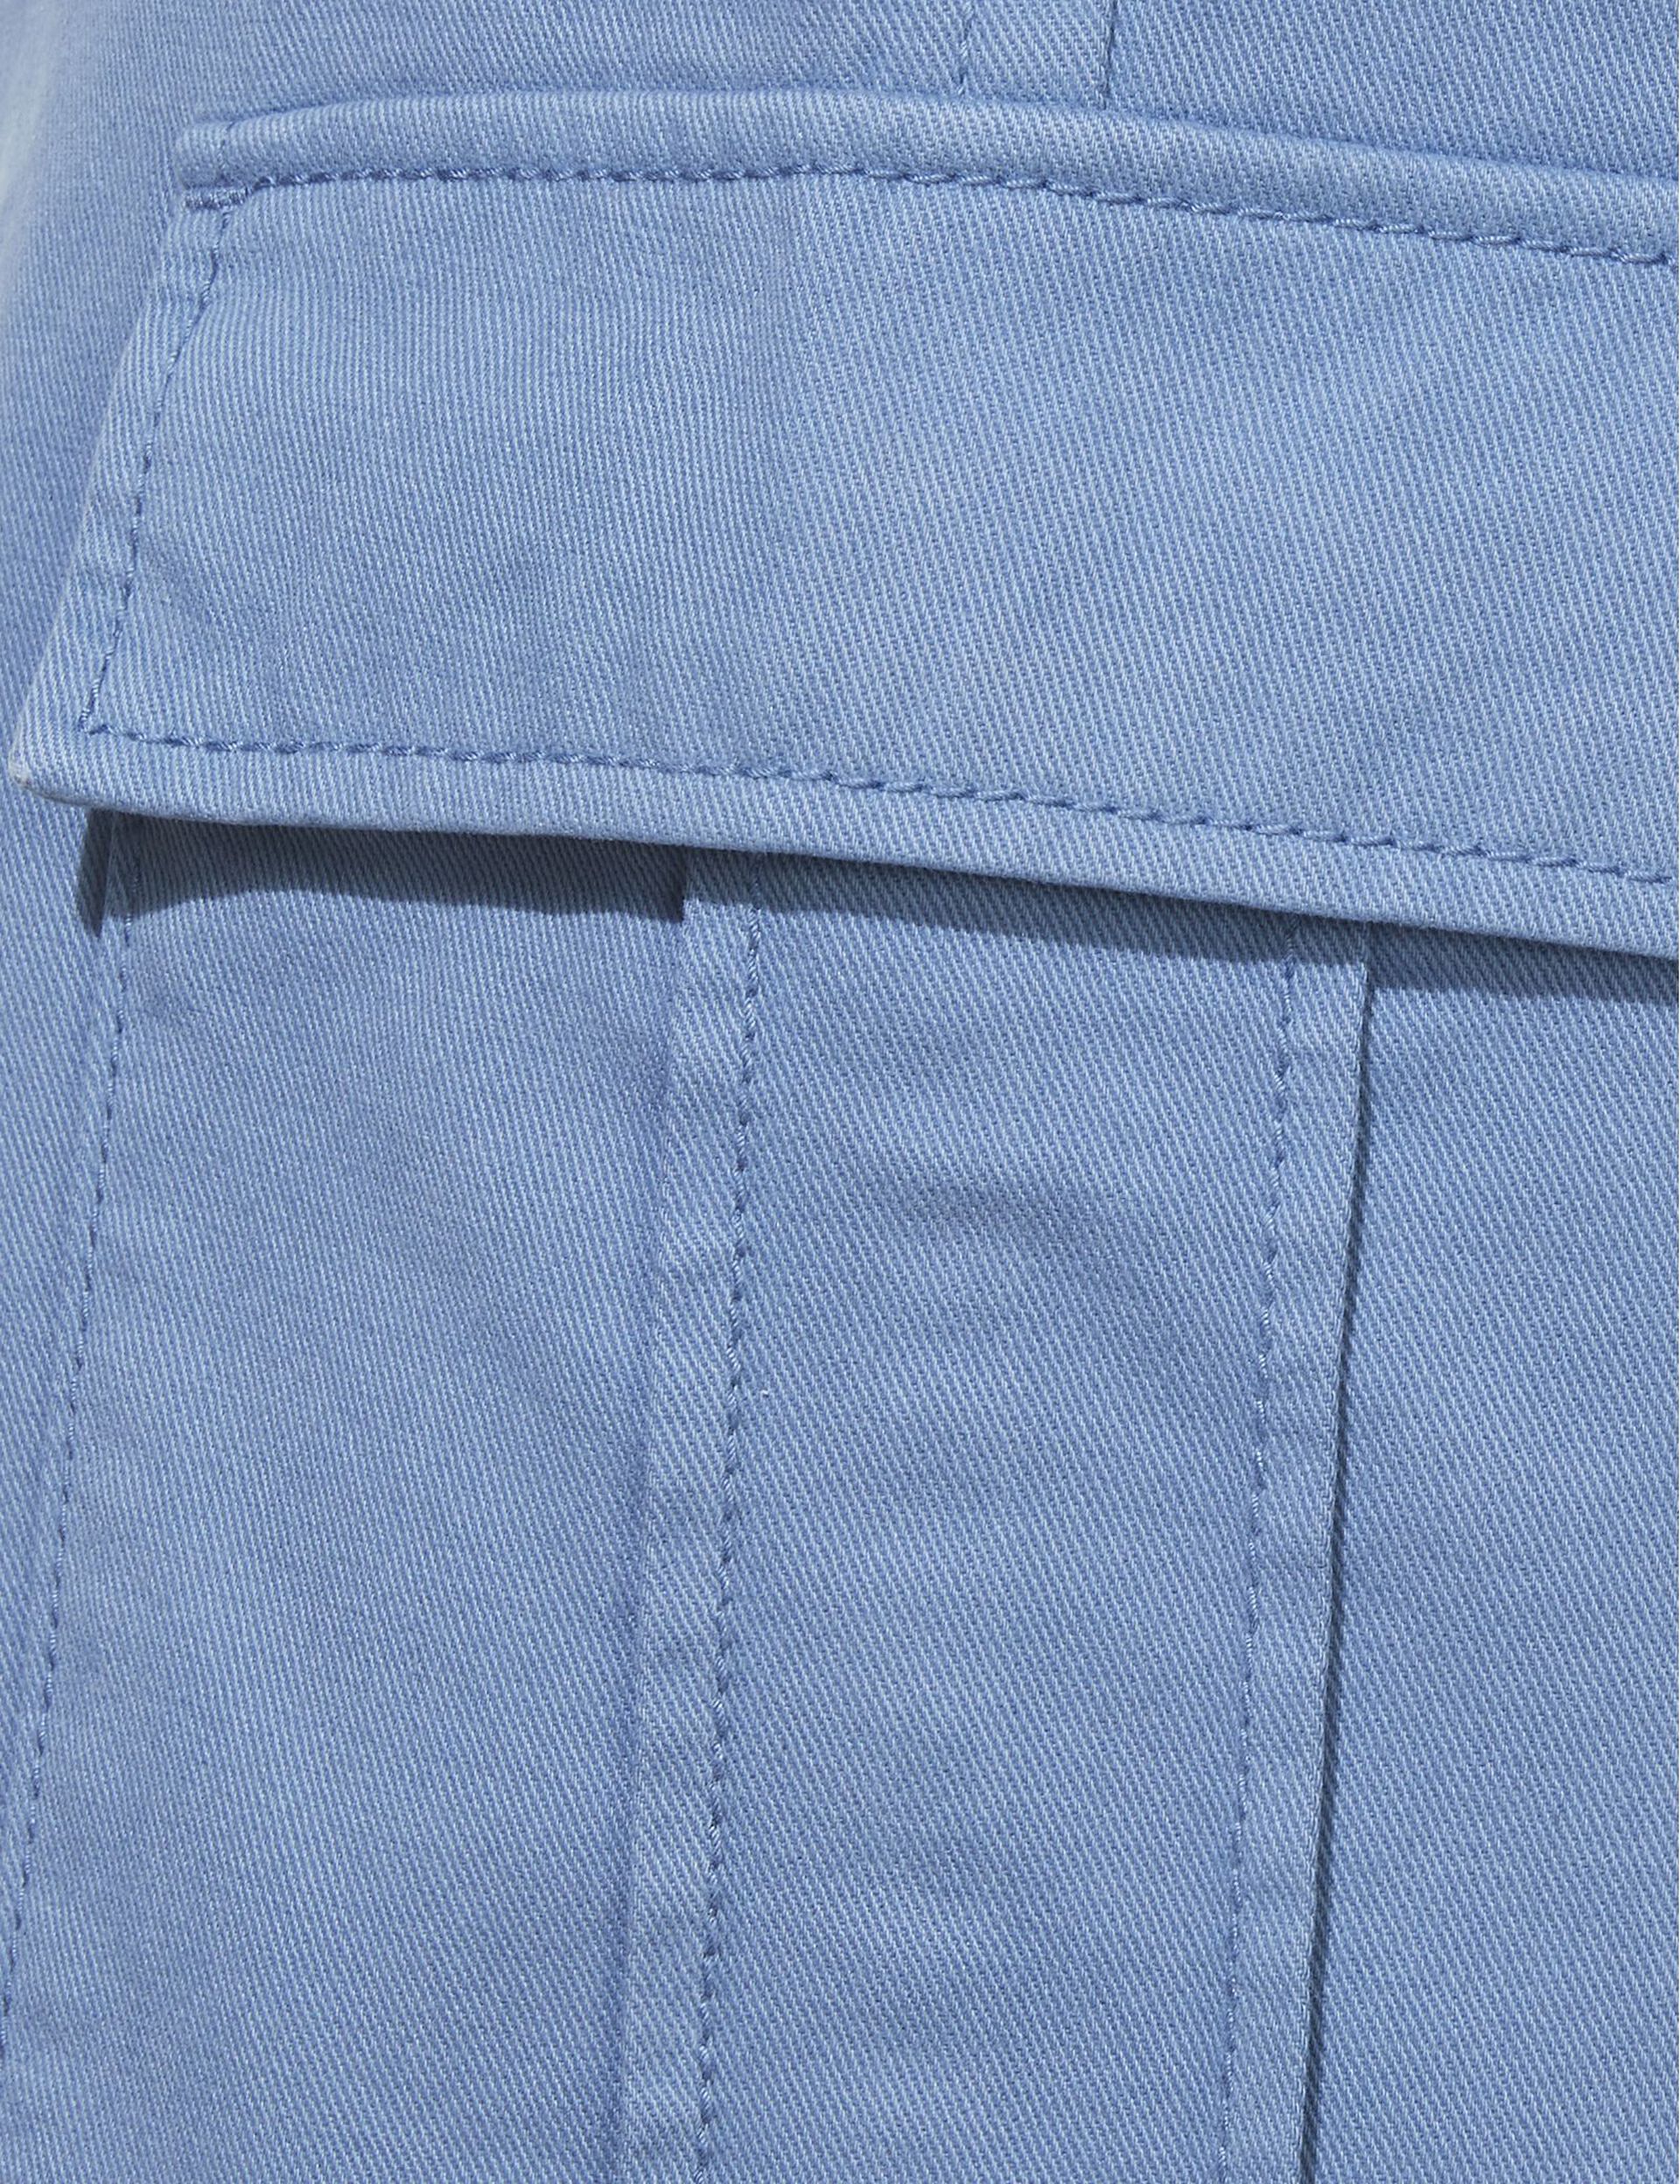 Pantalon cargo bleu